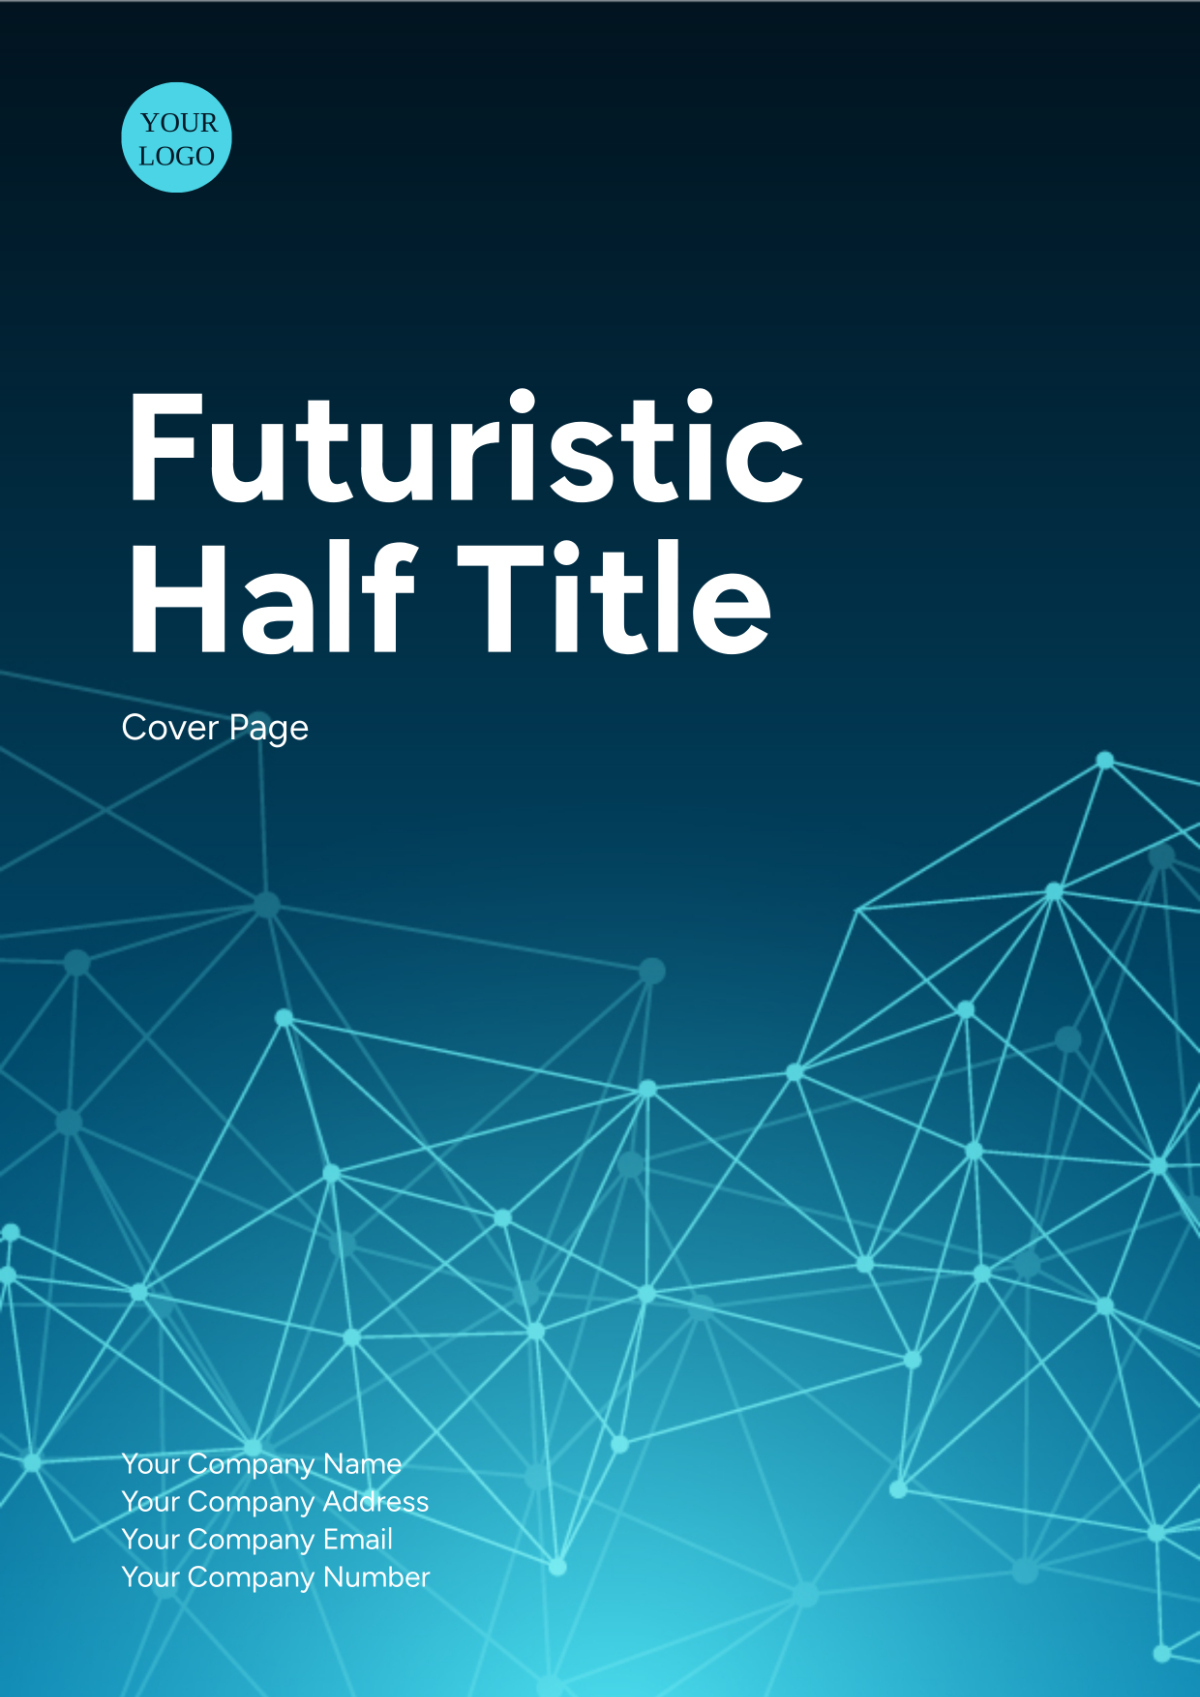 Futuristic Half Title Cover Page